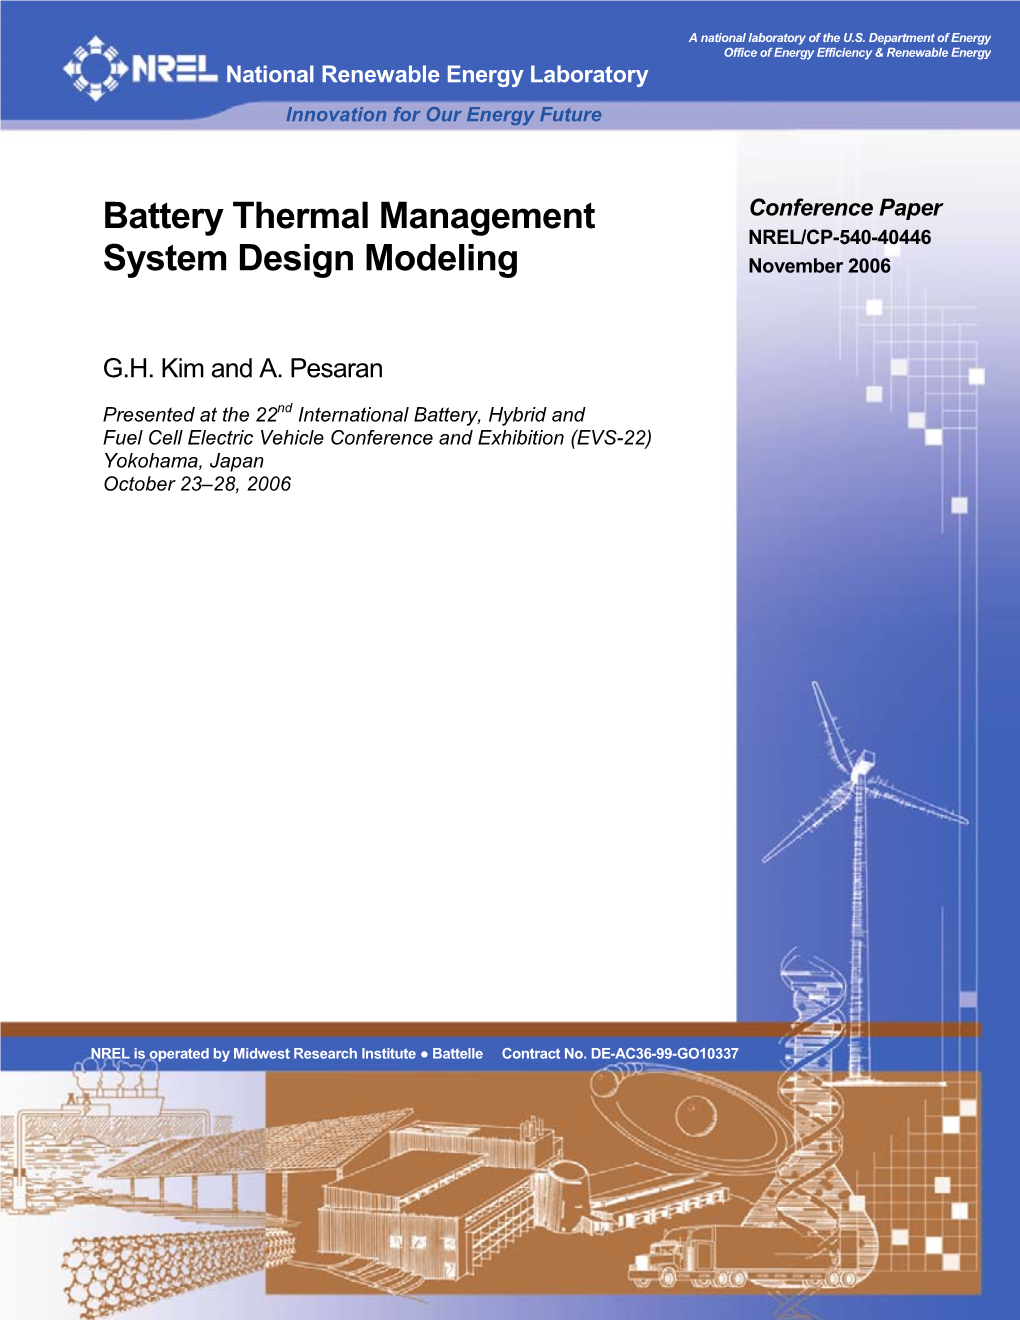 Battery Thermal Management System Design Modeling DE-AC36-99-GO10337